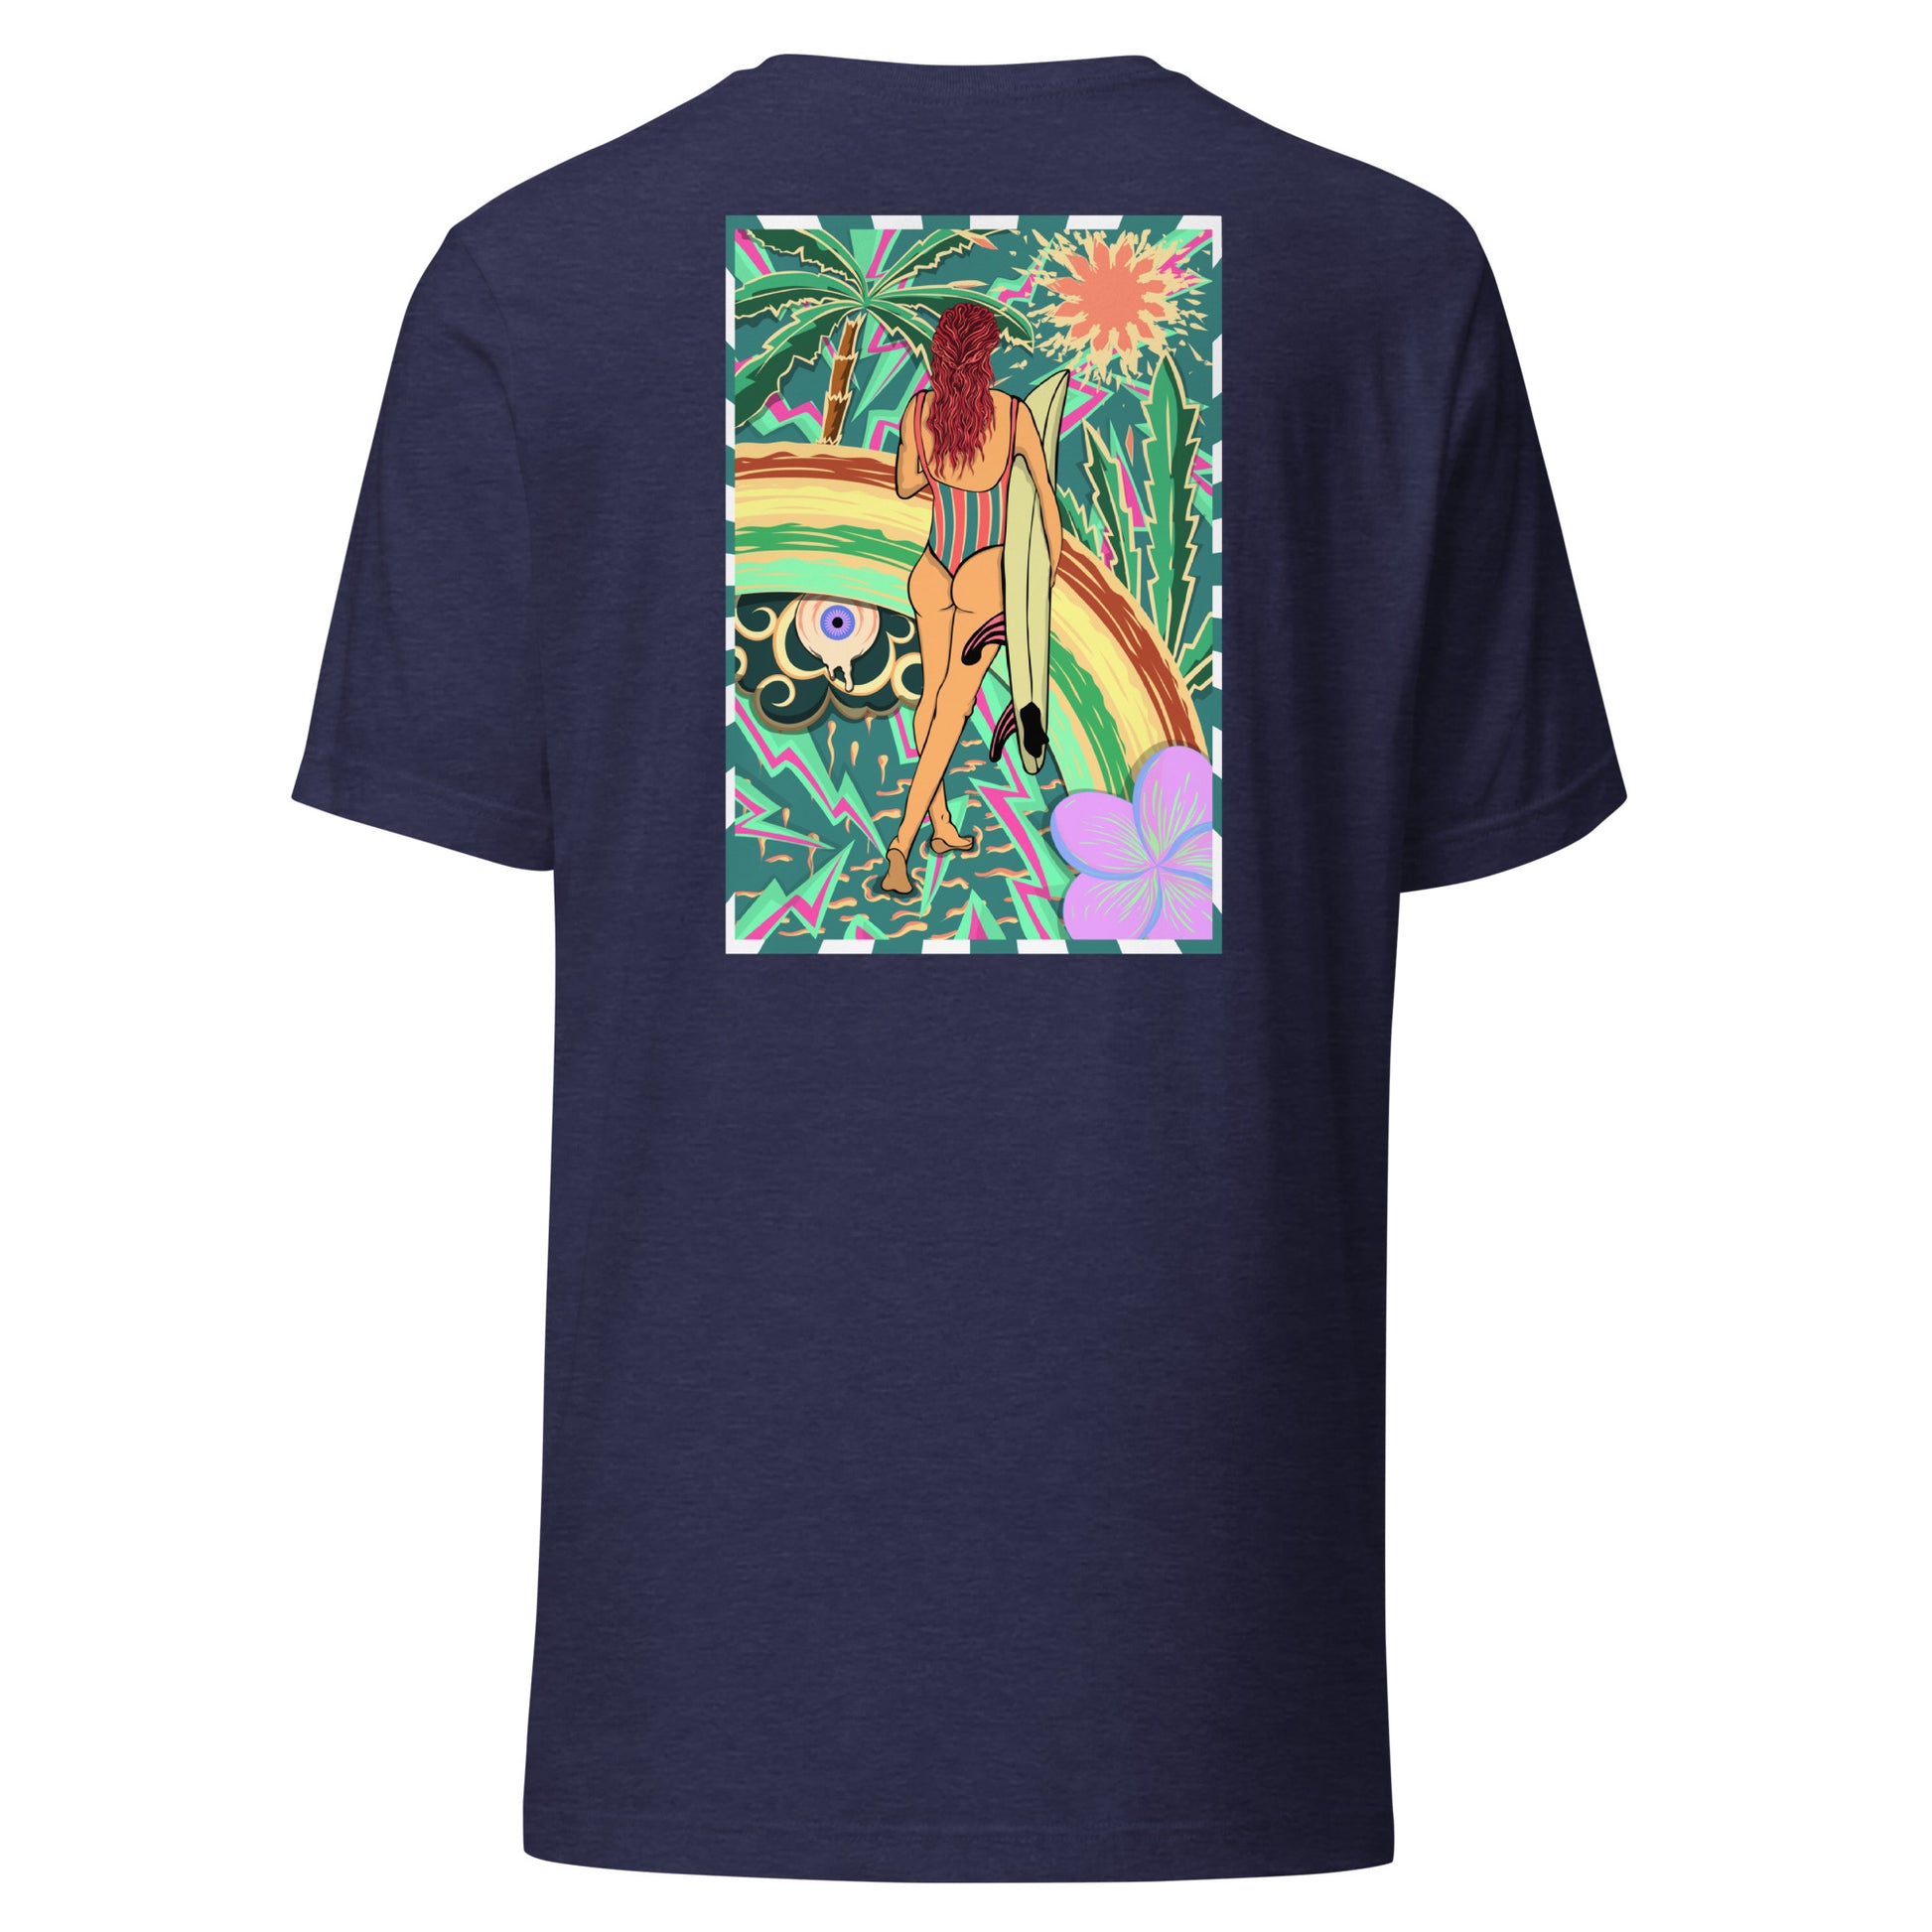 T-shirt surf vintage Walk Of Life surfeuse coloré hippie avec des palmier, fleur, arc en ciel et œil psychédélique. Tshirt dos navy nuit